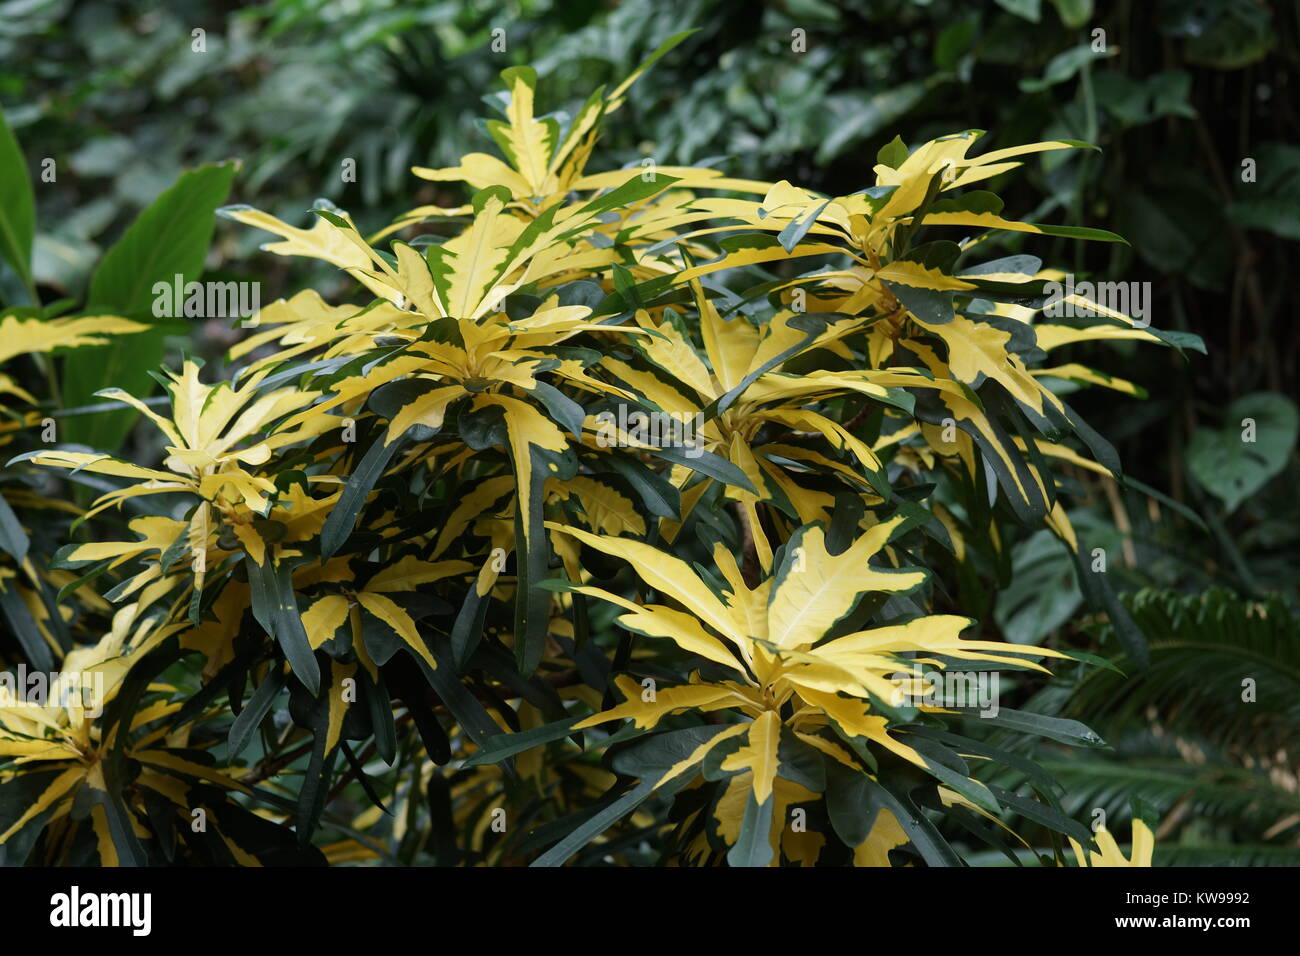 Codiaeum variegatum var. pictum 'Fred Sanders' Stock Photo